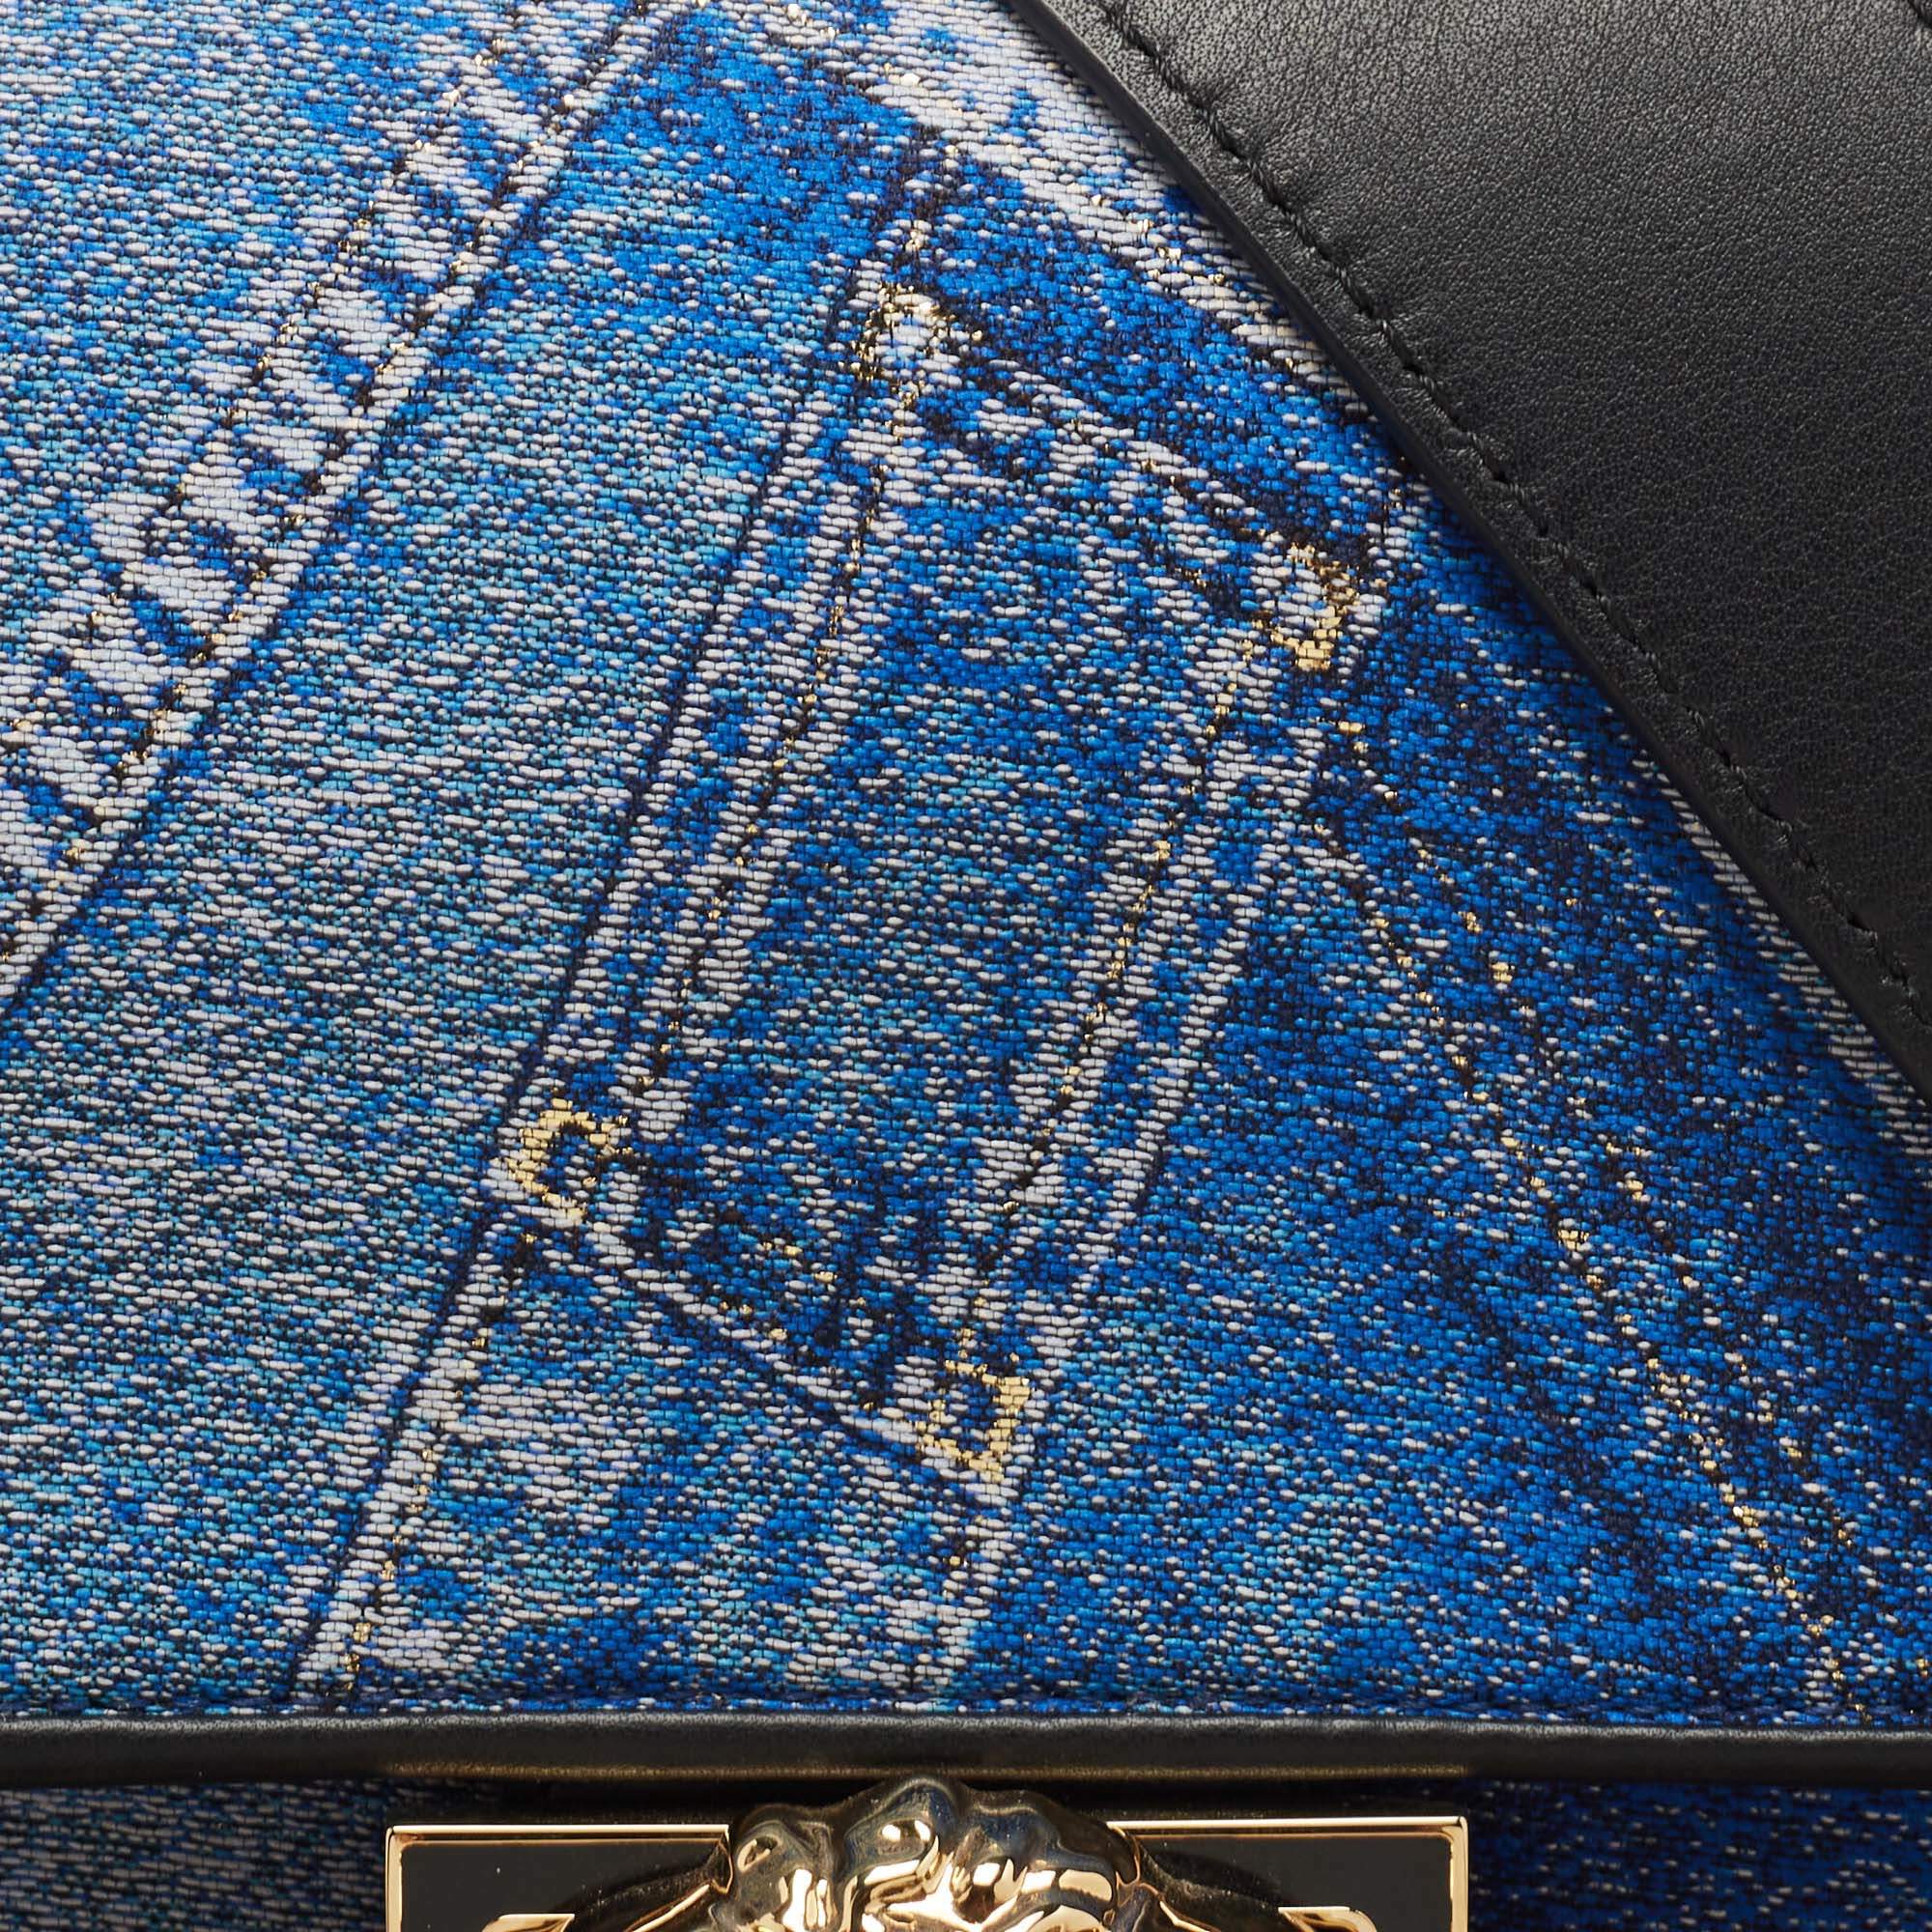 Cloth handbag Fendi X Versace Brown in Cloth - 32613007